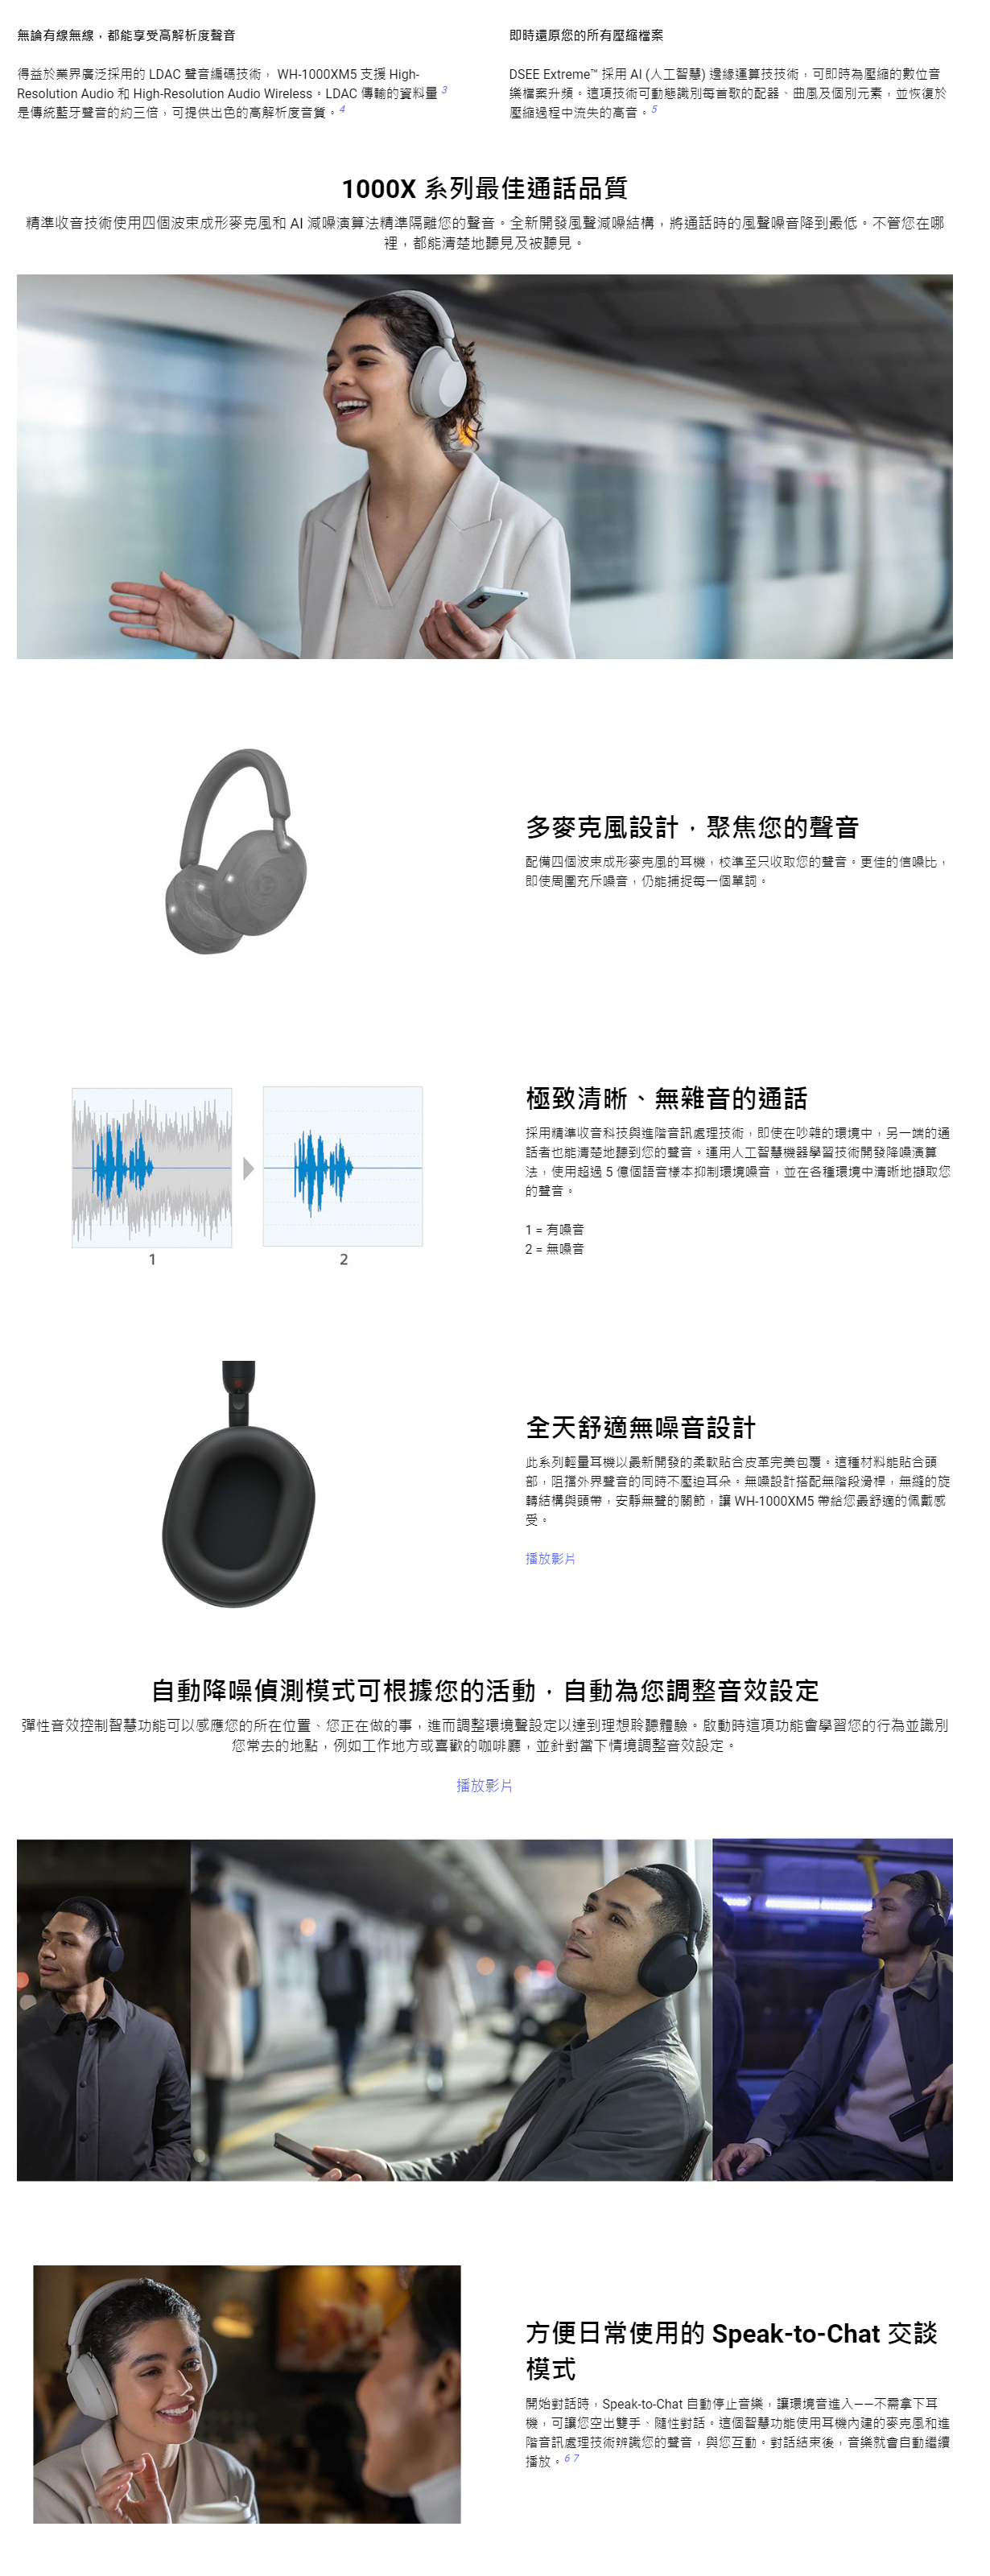 【SONY】旗艦降噪藍牙耳機 WH-1000XM5(台灣公司貨)